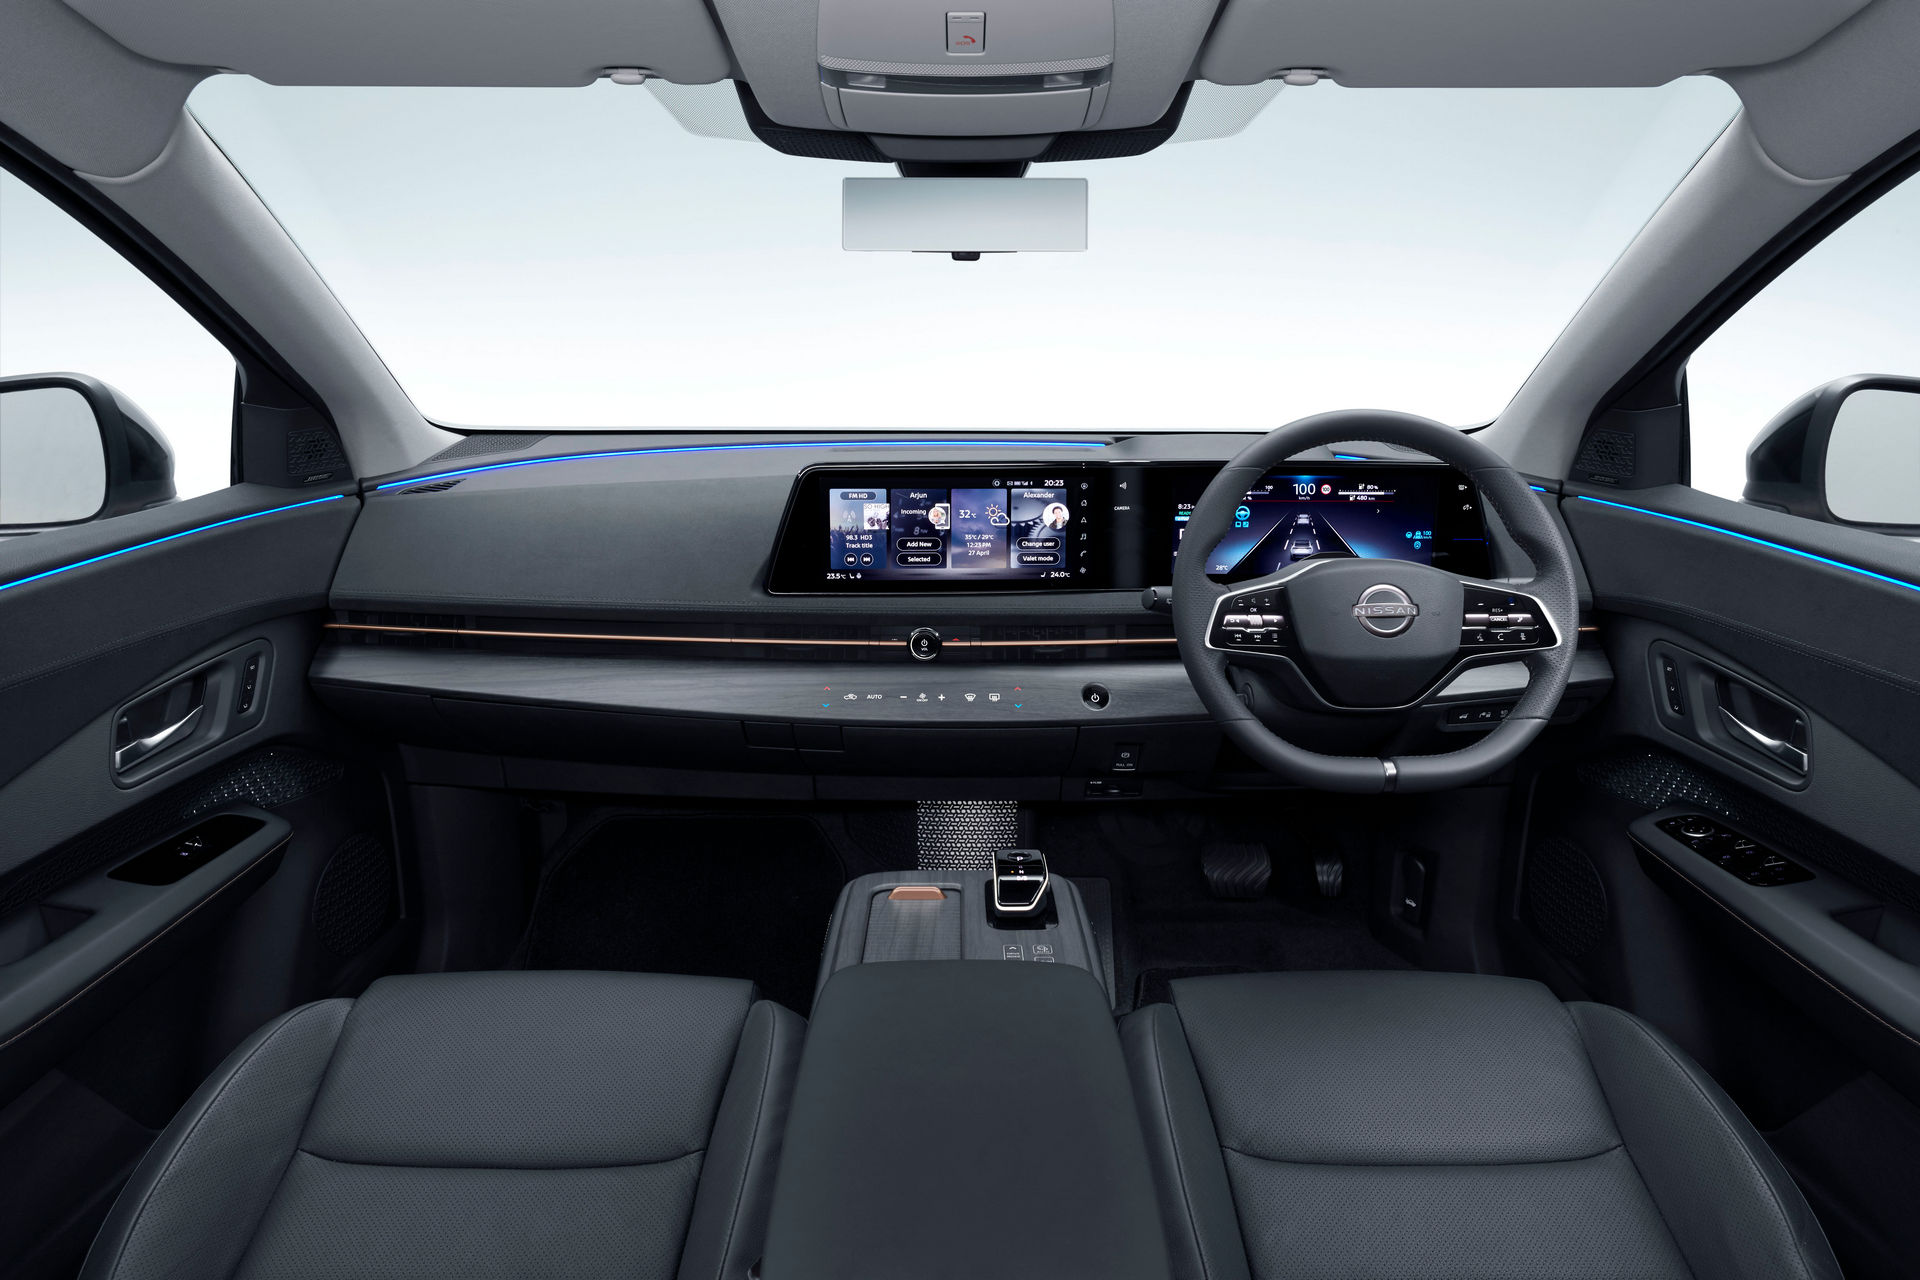 2021 Nissan Ariya elektrikli SUV, markanın yeni logosuyla birlikte tanıtıldı